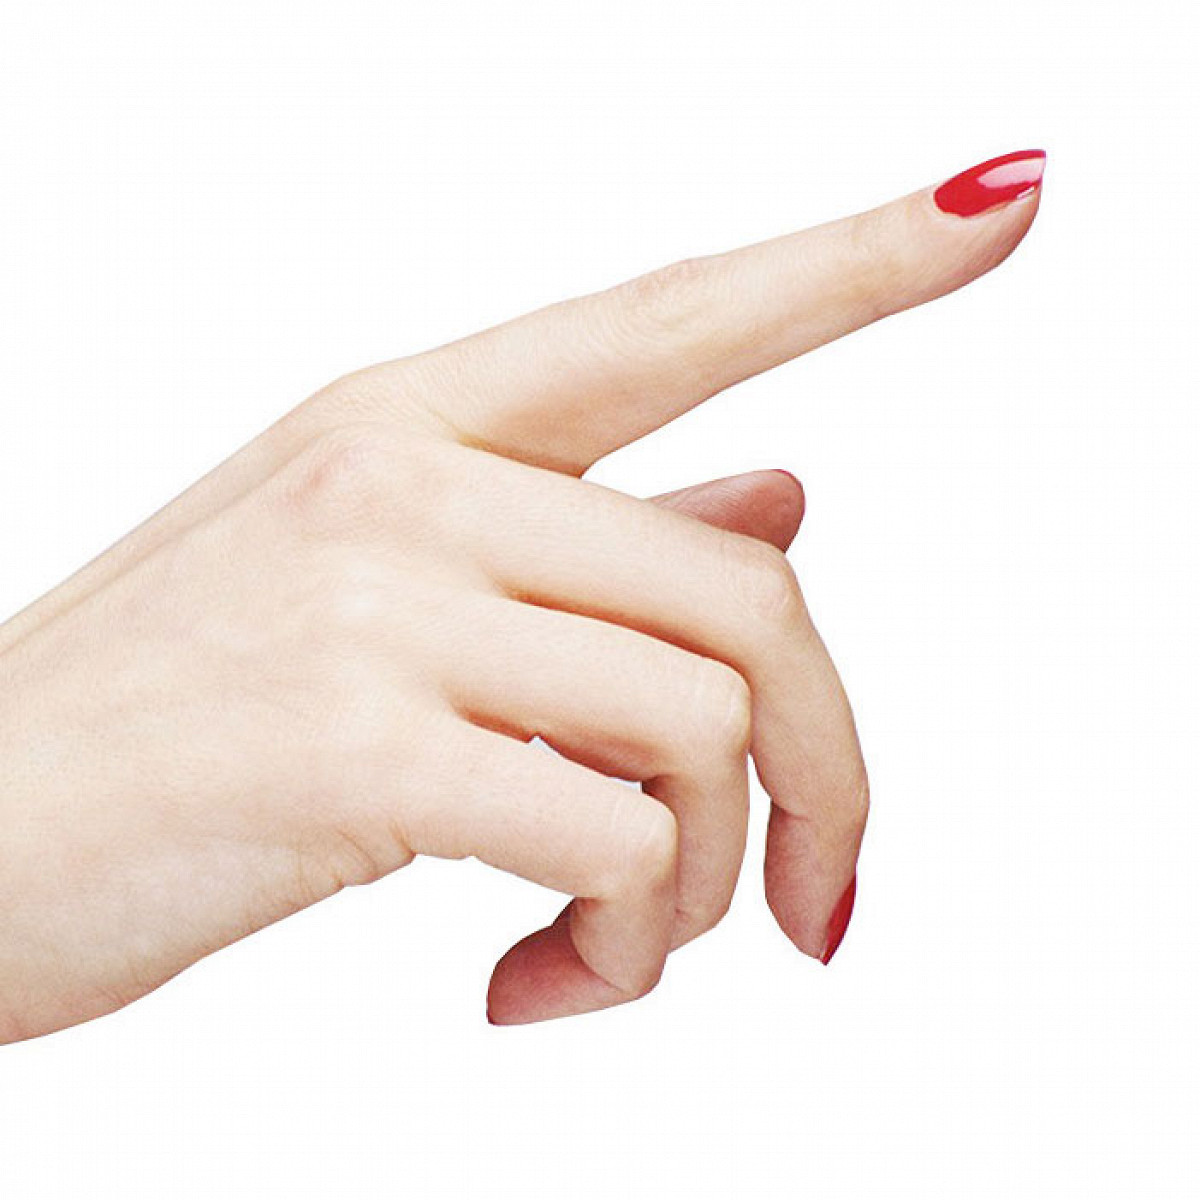 14 вещей, которые лучше не делать с ногтями - Афиша Daily